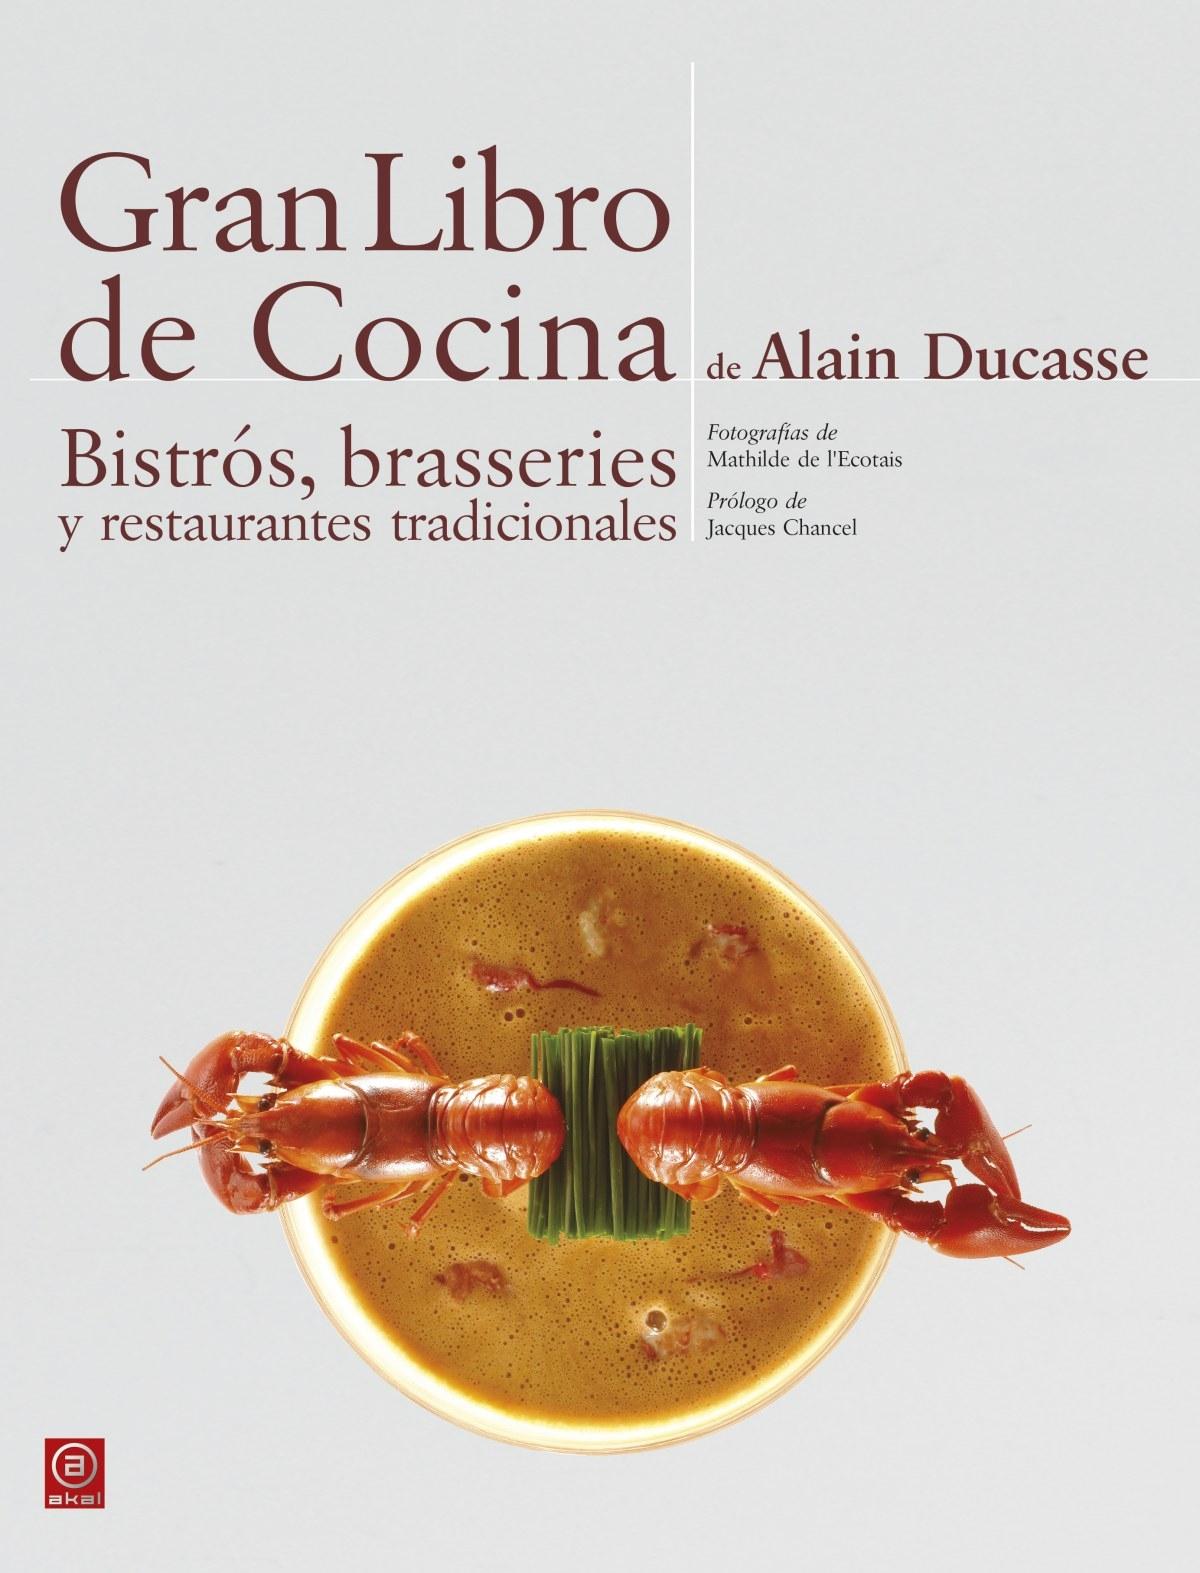 Gran libro de cocina "Bistrós, brasseries y restaurantes tradicionales"